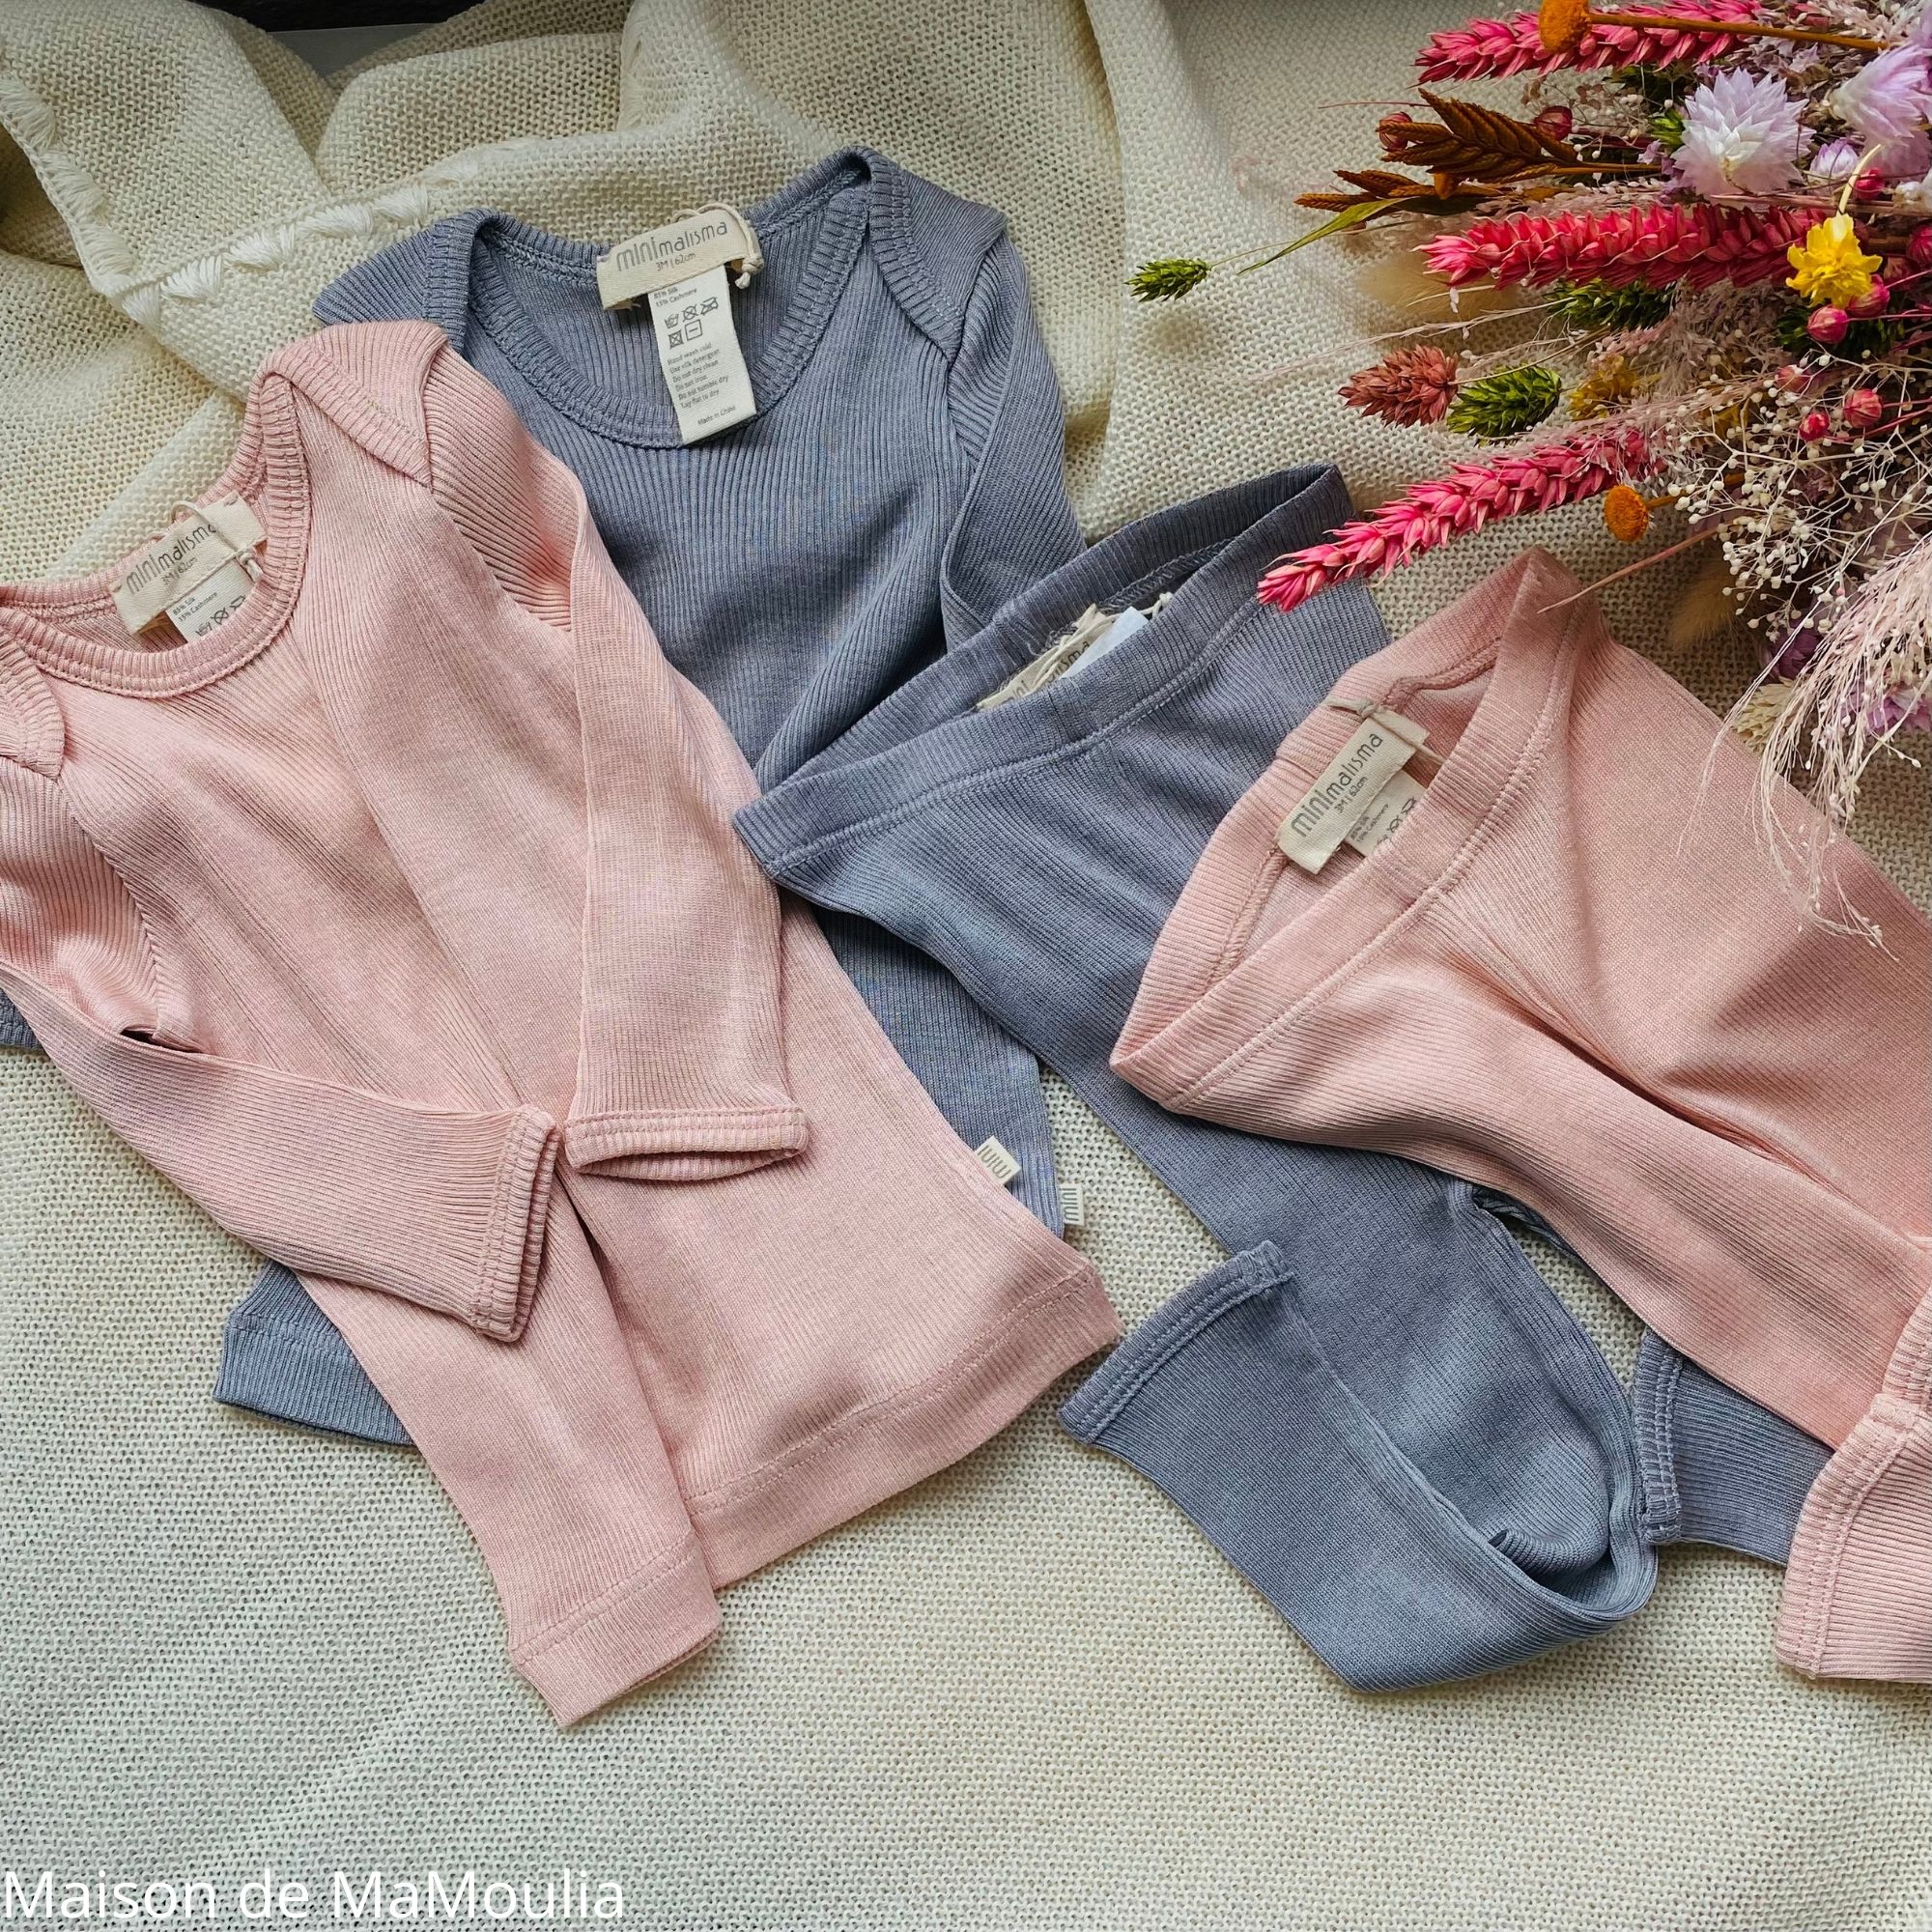 tshirt-legging-pantalon-bebe-soie-cachemire-minimalisma-maison-de-mamoulia-gris-clair-rose